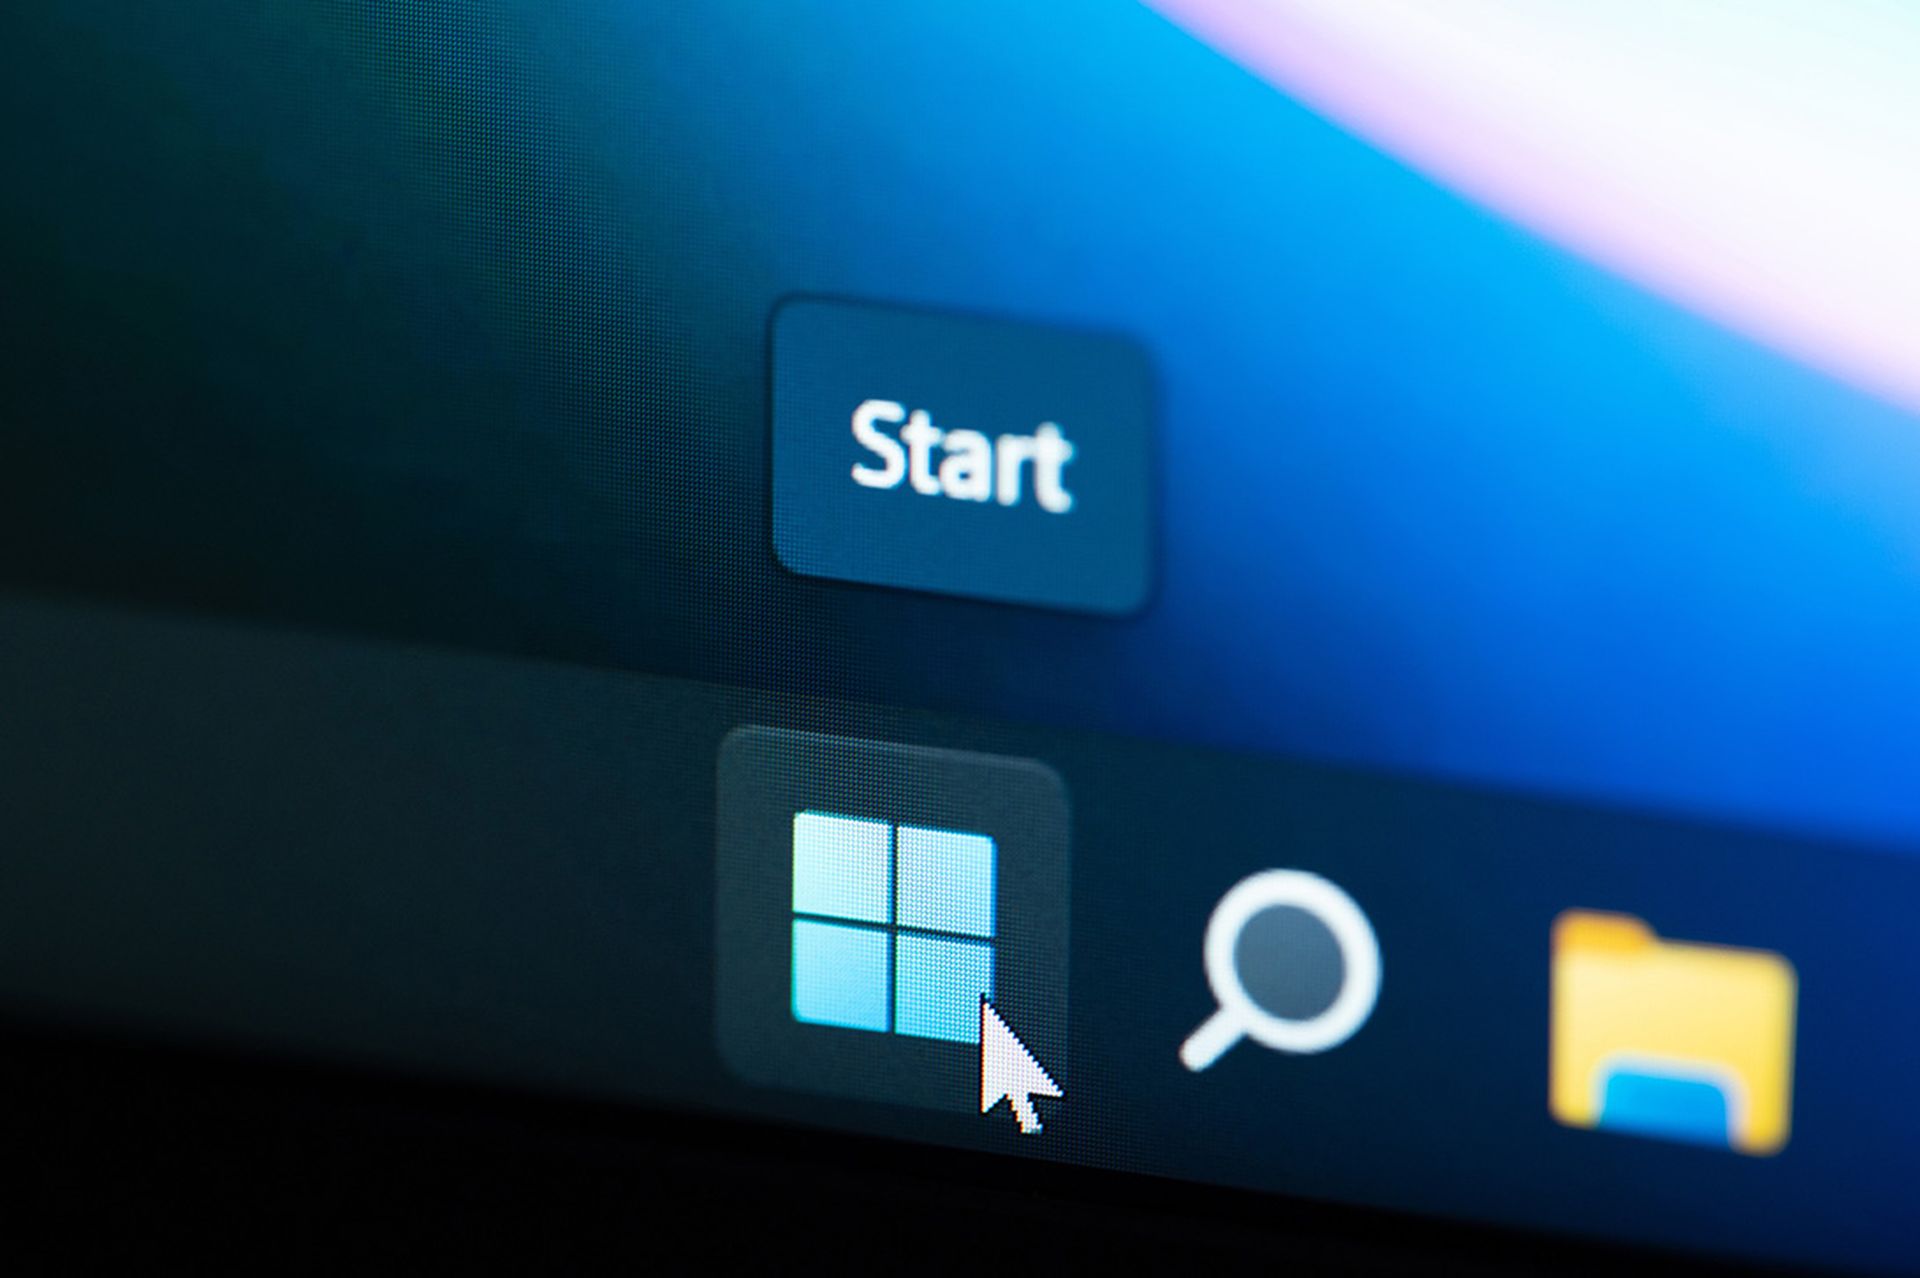 Windows 11 start button on computer menu screen close up view